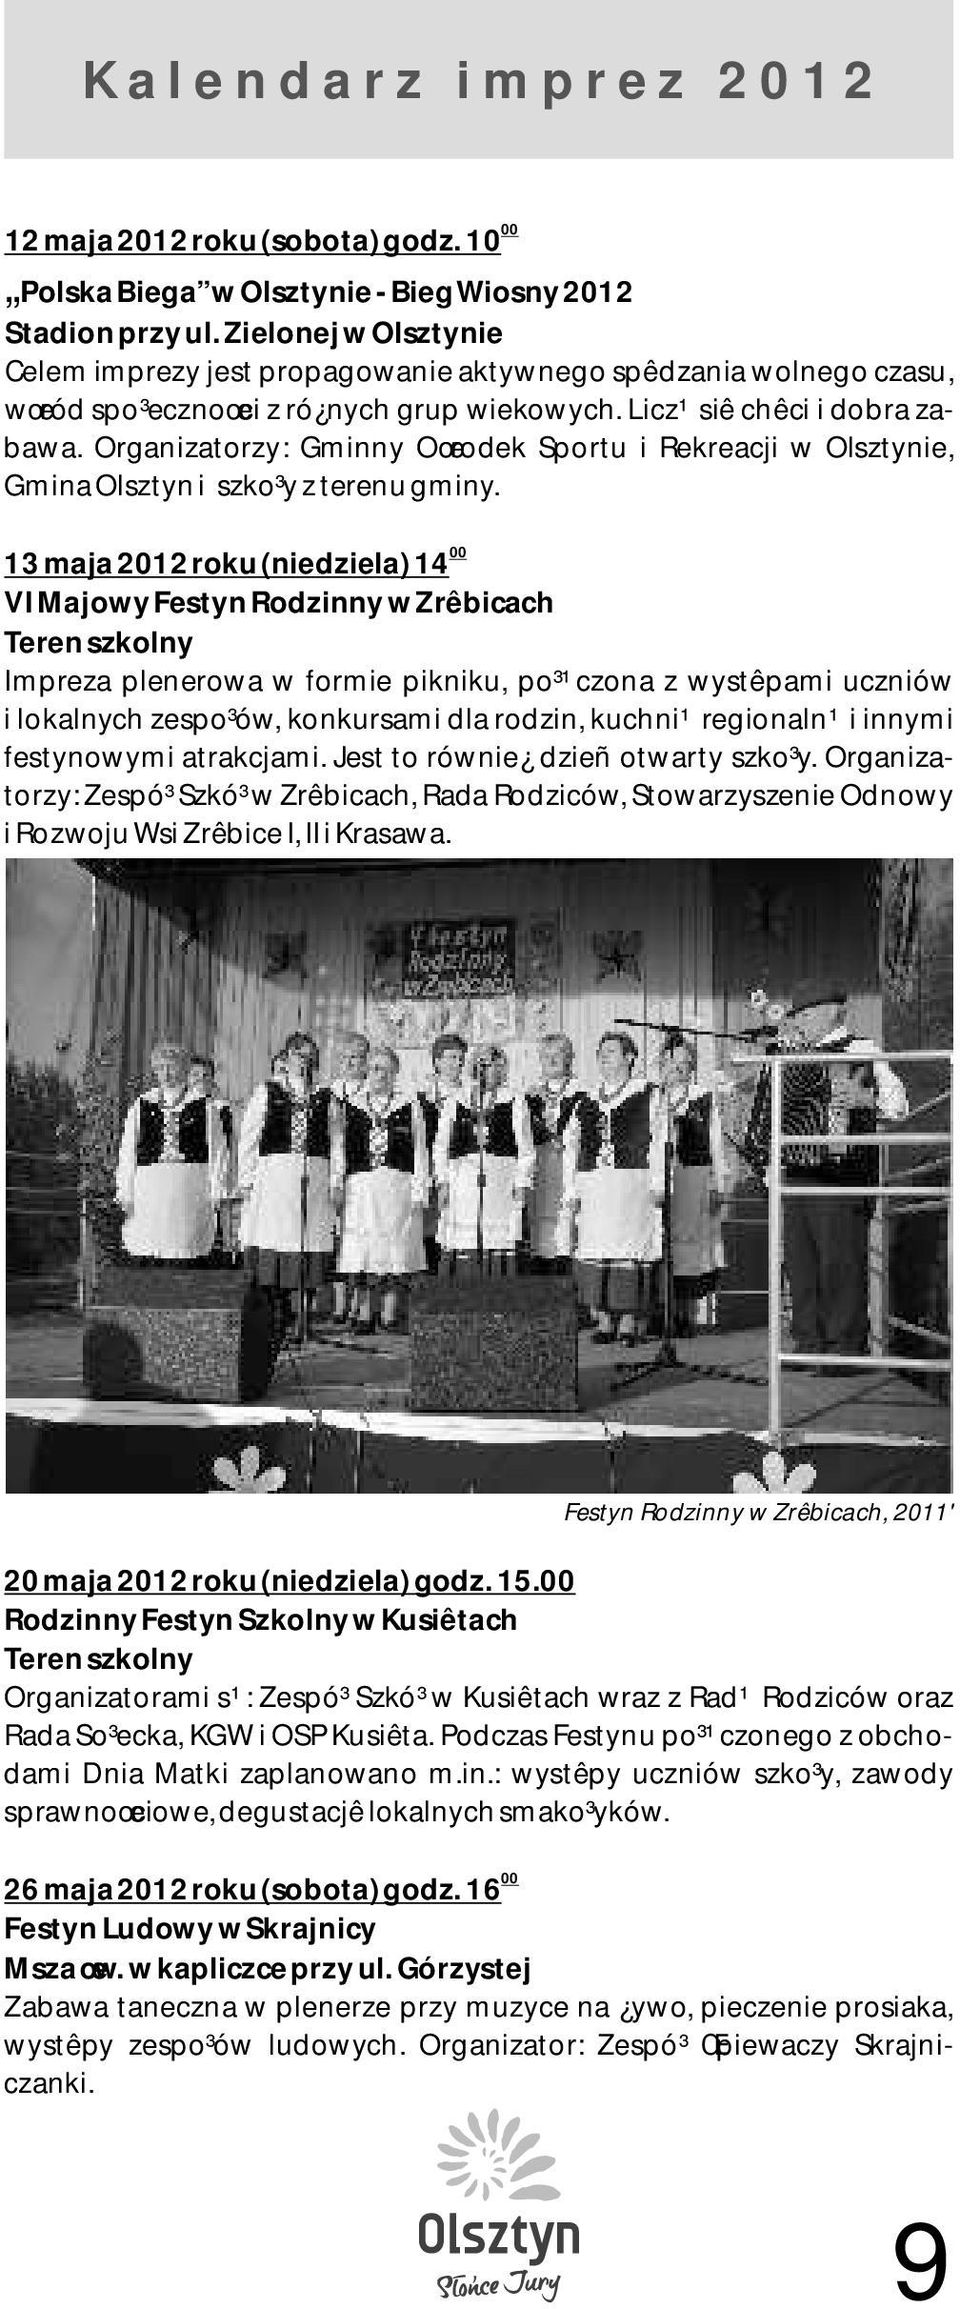 Organizatorzy: Gminny Oœrodek Sportu i Rekreacji w Olsztynie, Gmina Olsztyn i szko³y z terenu gminy.